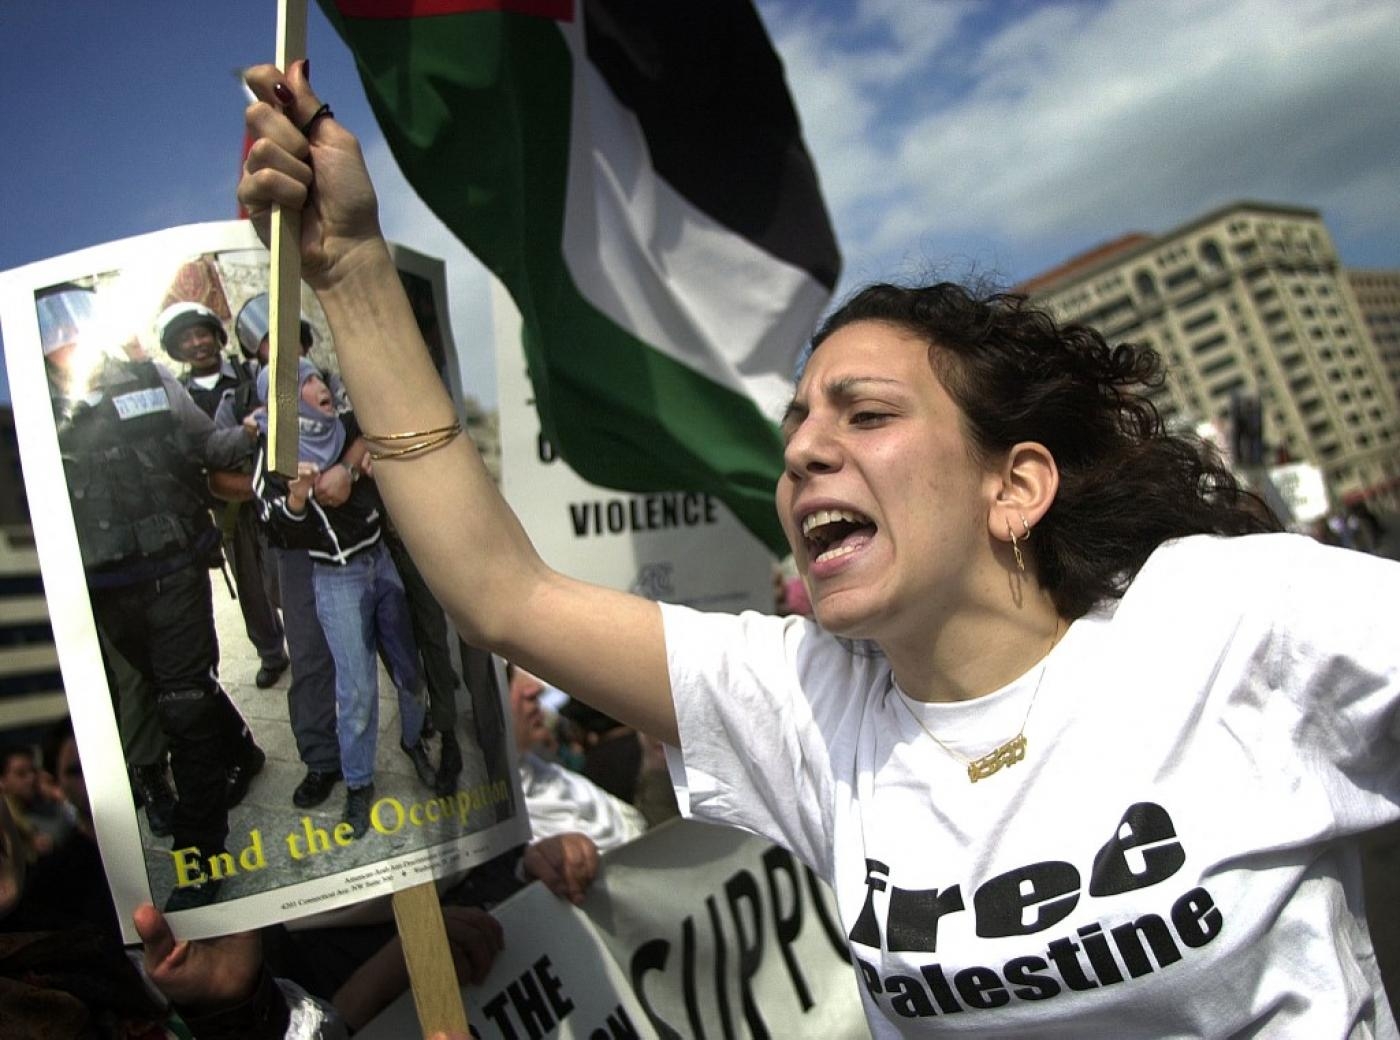 Des étudiants manifestent contre l’occupation israélienne à Washington en 2002 (AFP)